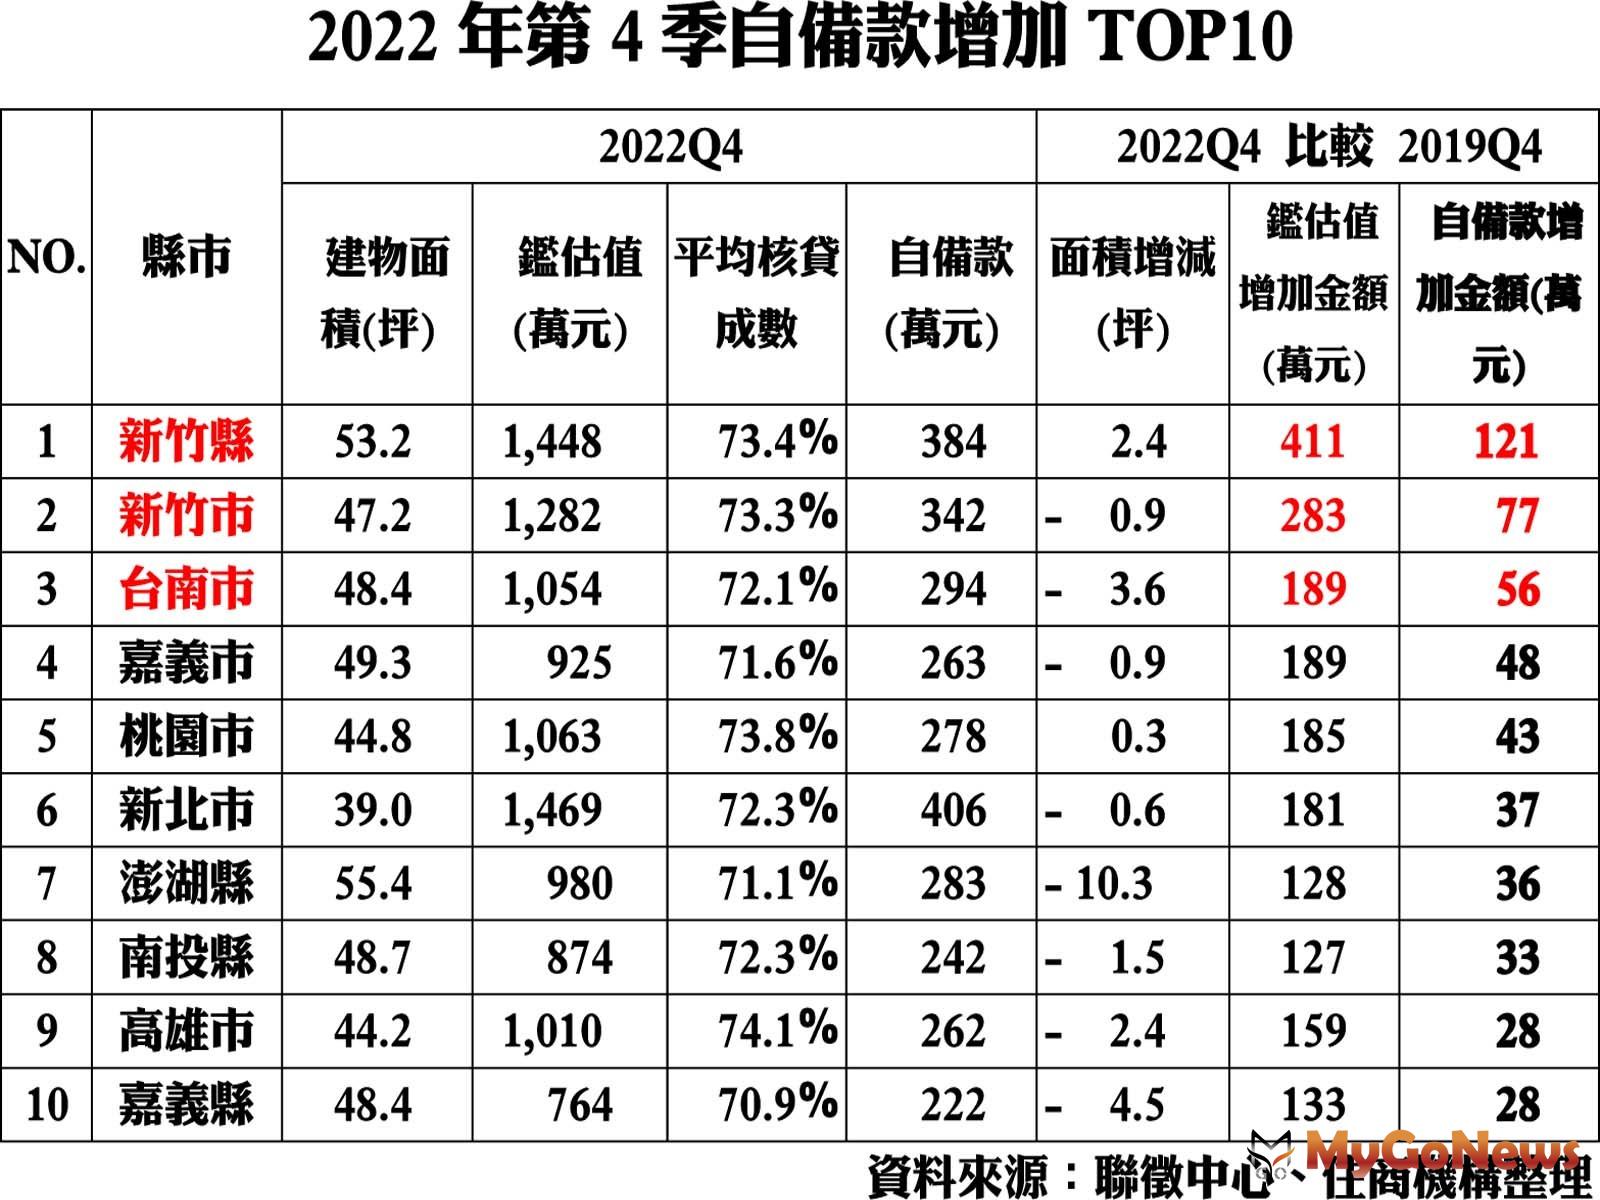 2022年第4季自備款增加TOP10 MyGoNews房地產新聞 市場快訊